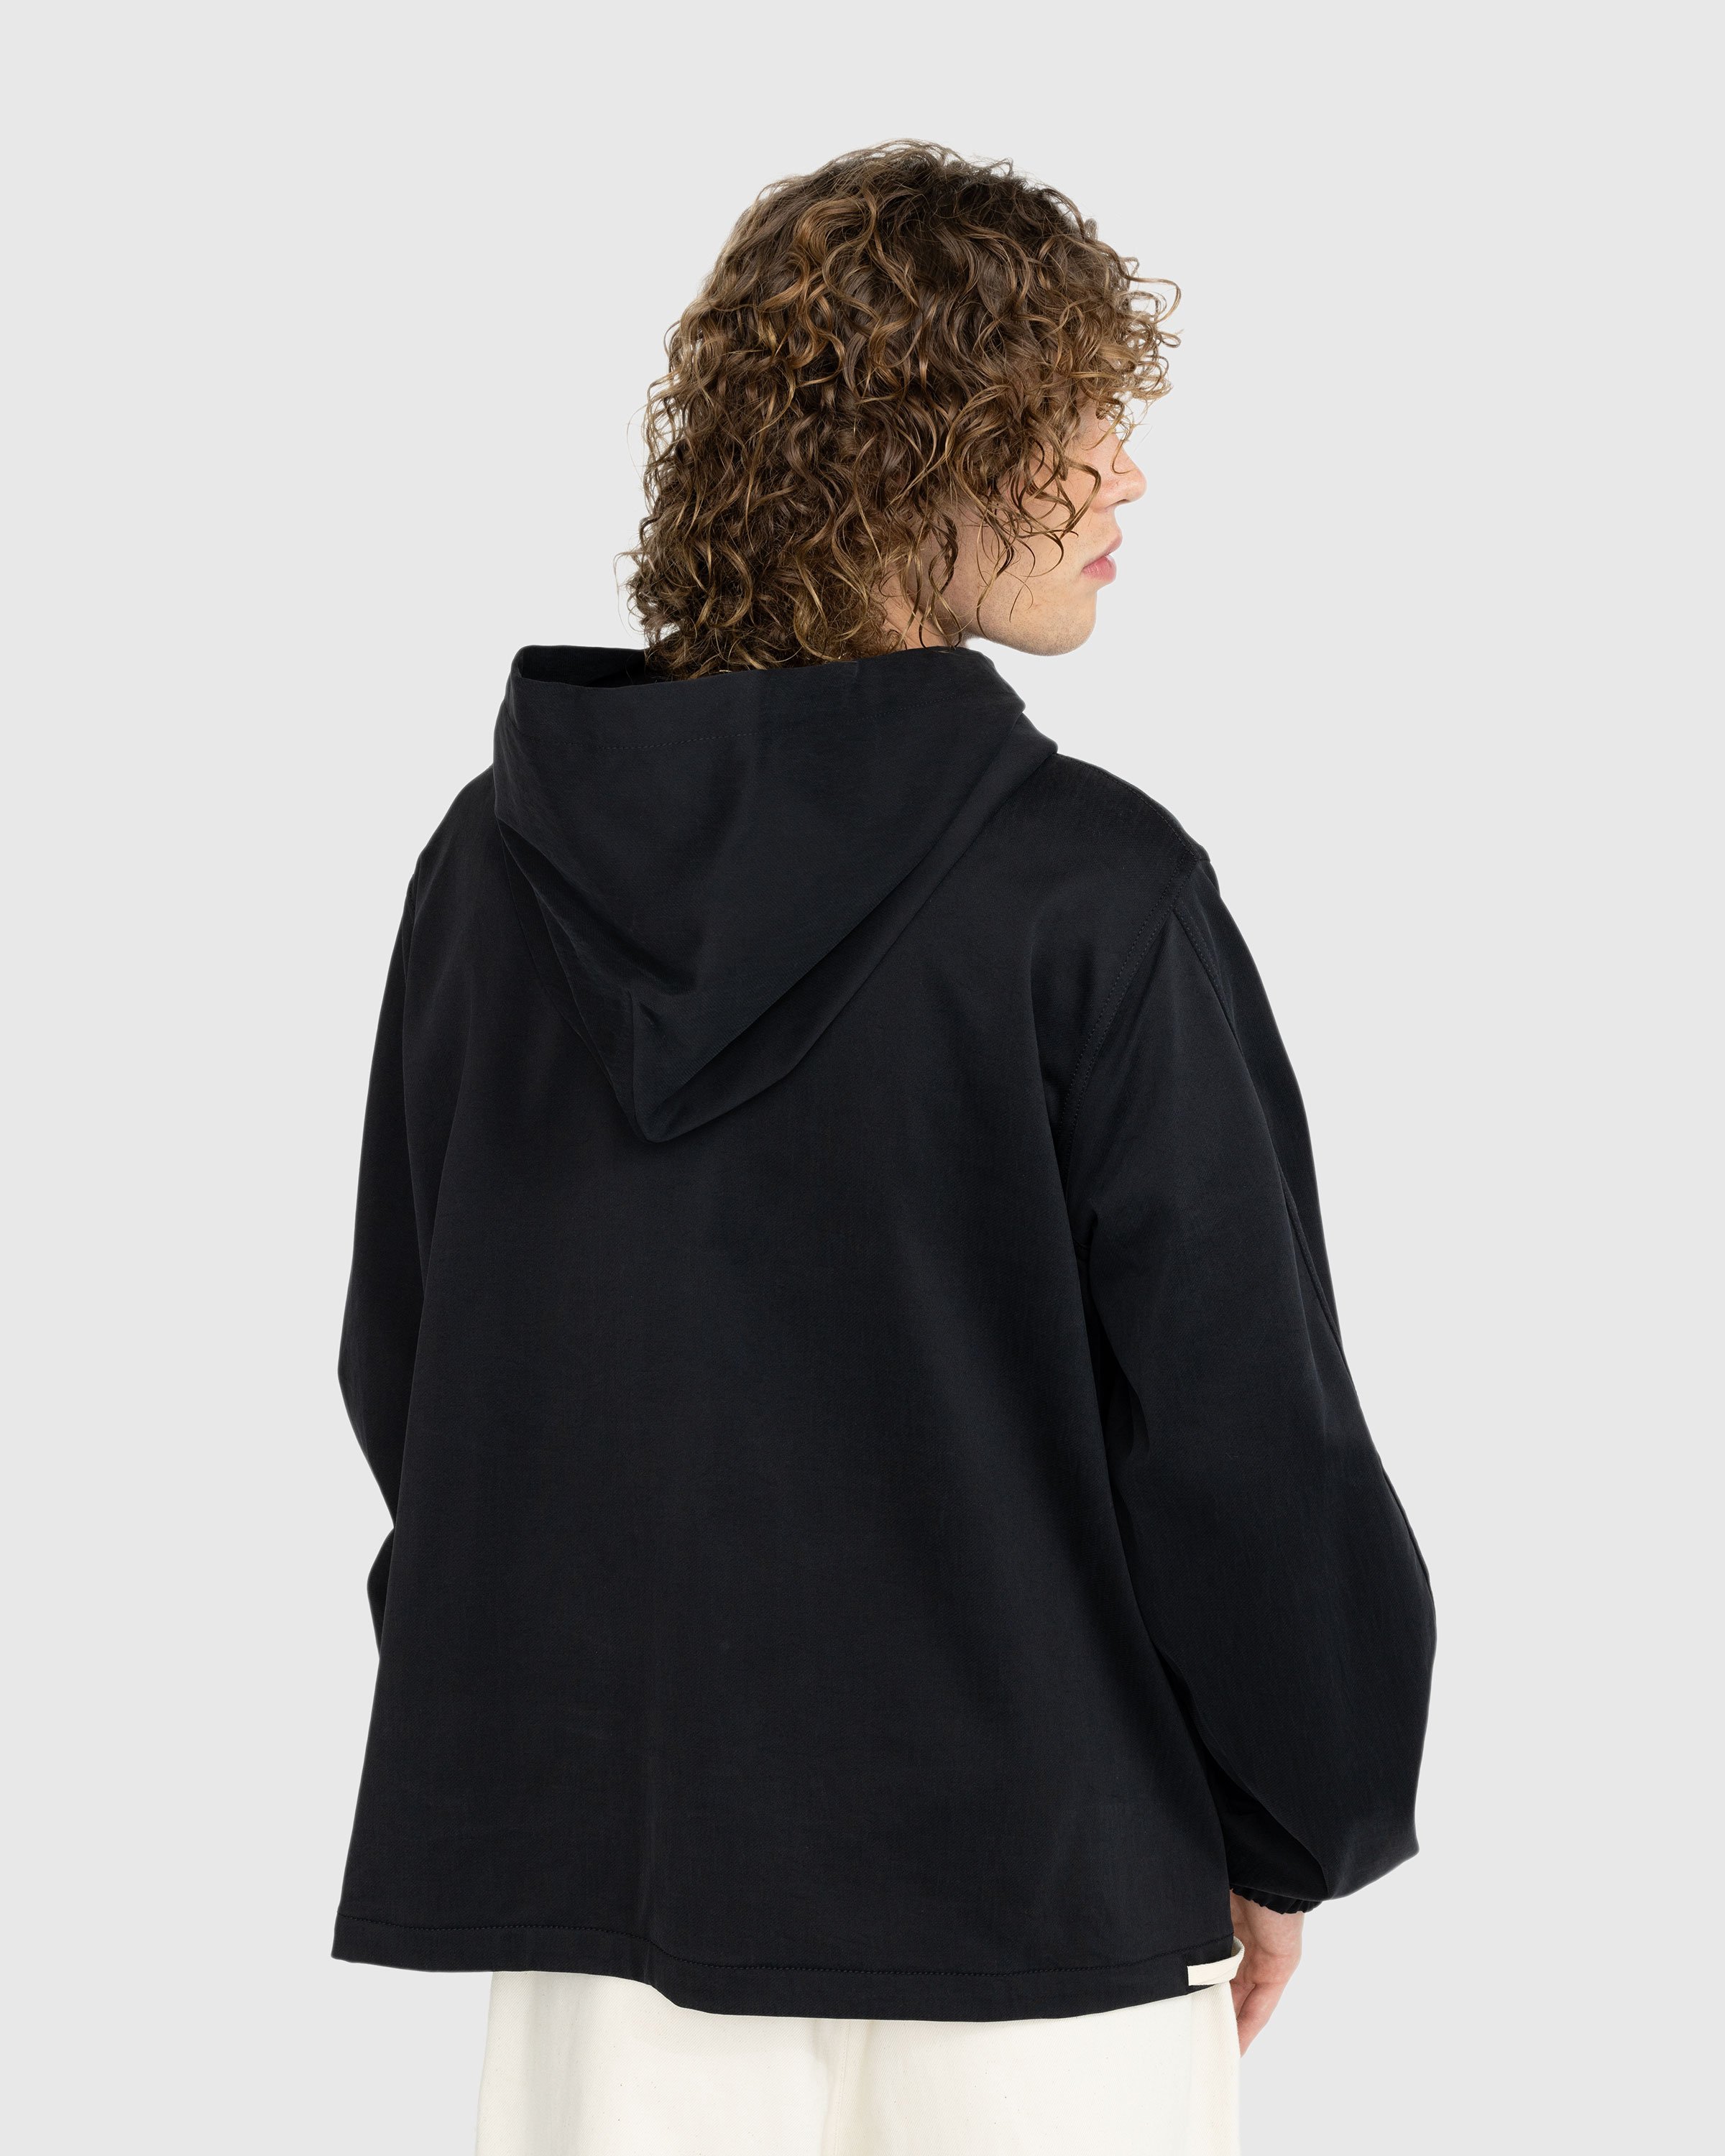 Jil Sander - Hooded Sweatshirt Black - Clothing - Black - Image 3